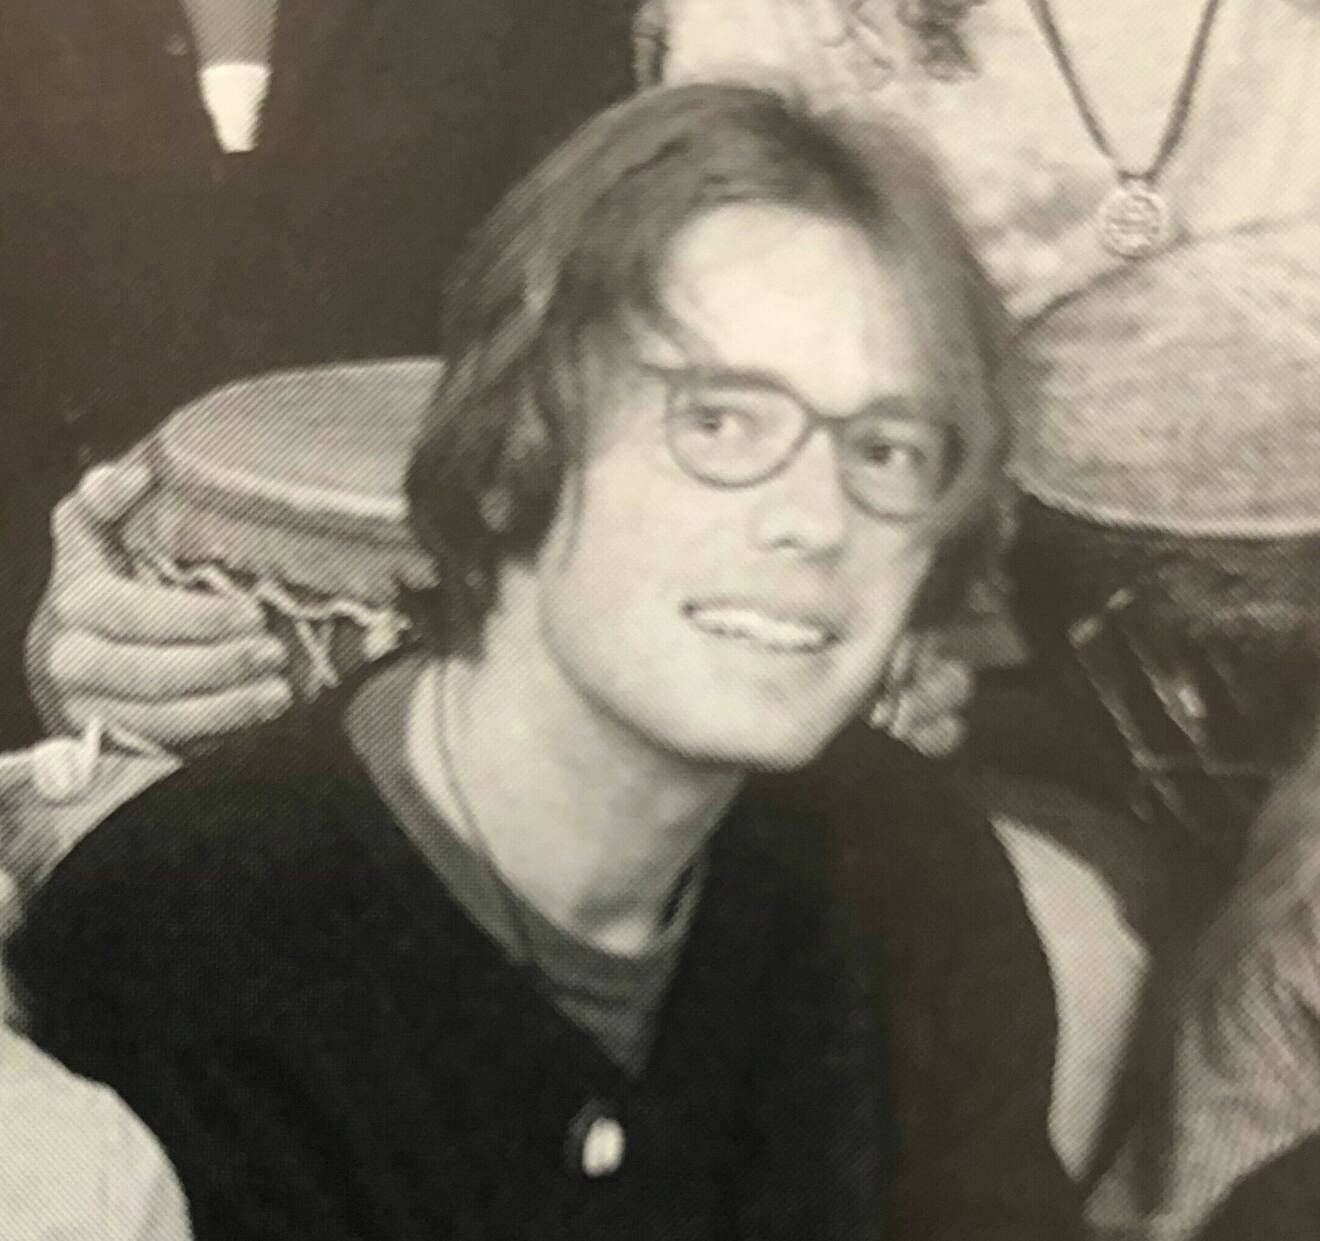 Patric Eghammer, 24 år, på ett foto i en skolkatalog, då han jobbade som elgitarrlärare på ett estetprogram.